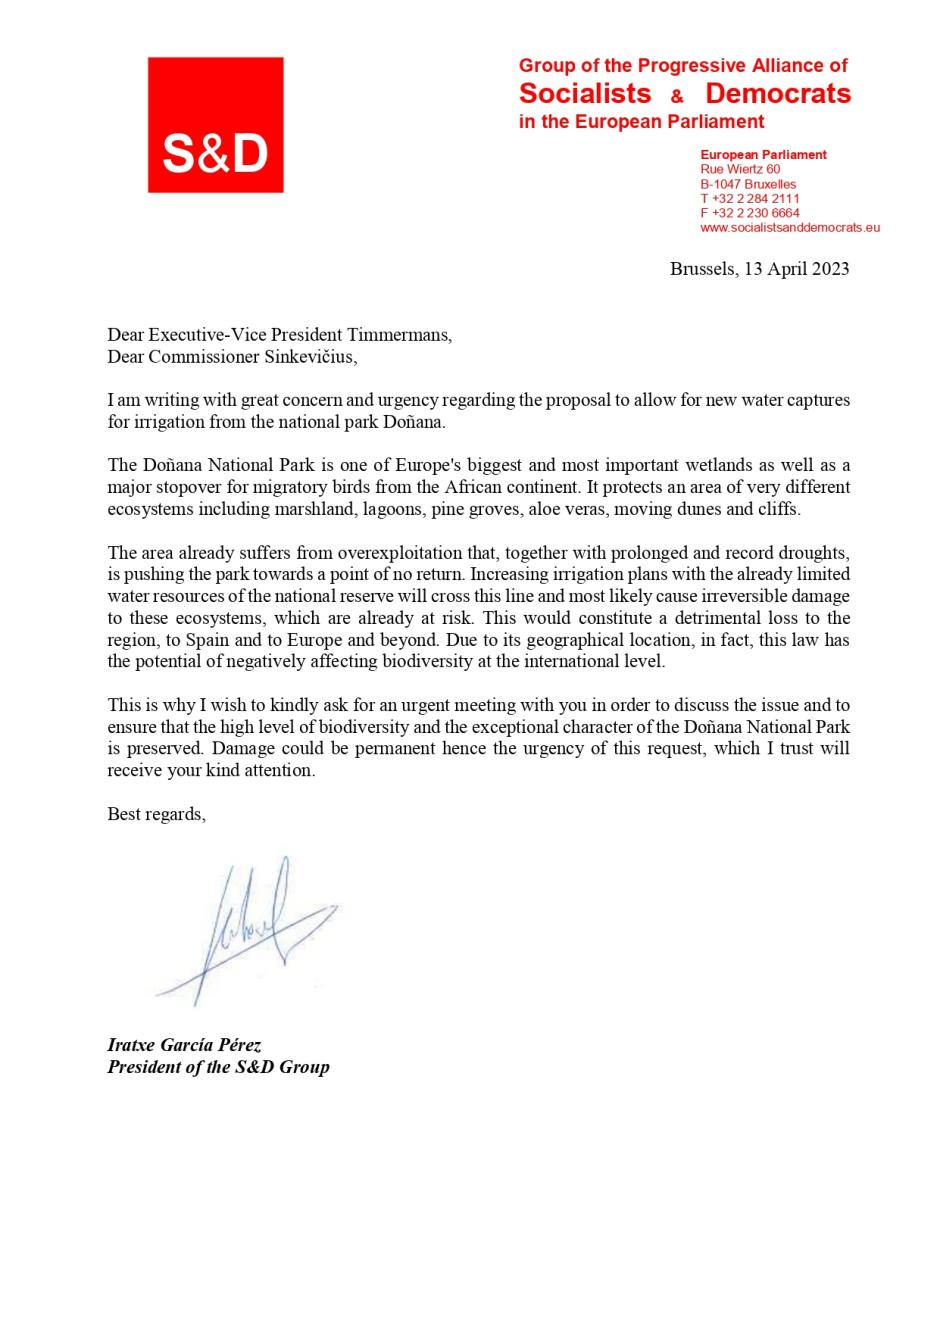 Carta de la socialista Iratxe García a la Comisión Europea sobre regadíos en Doñana